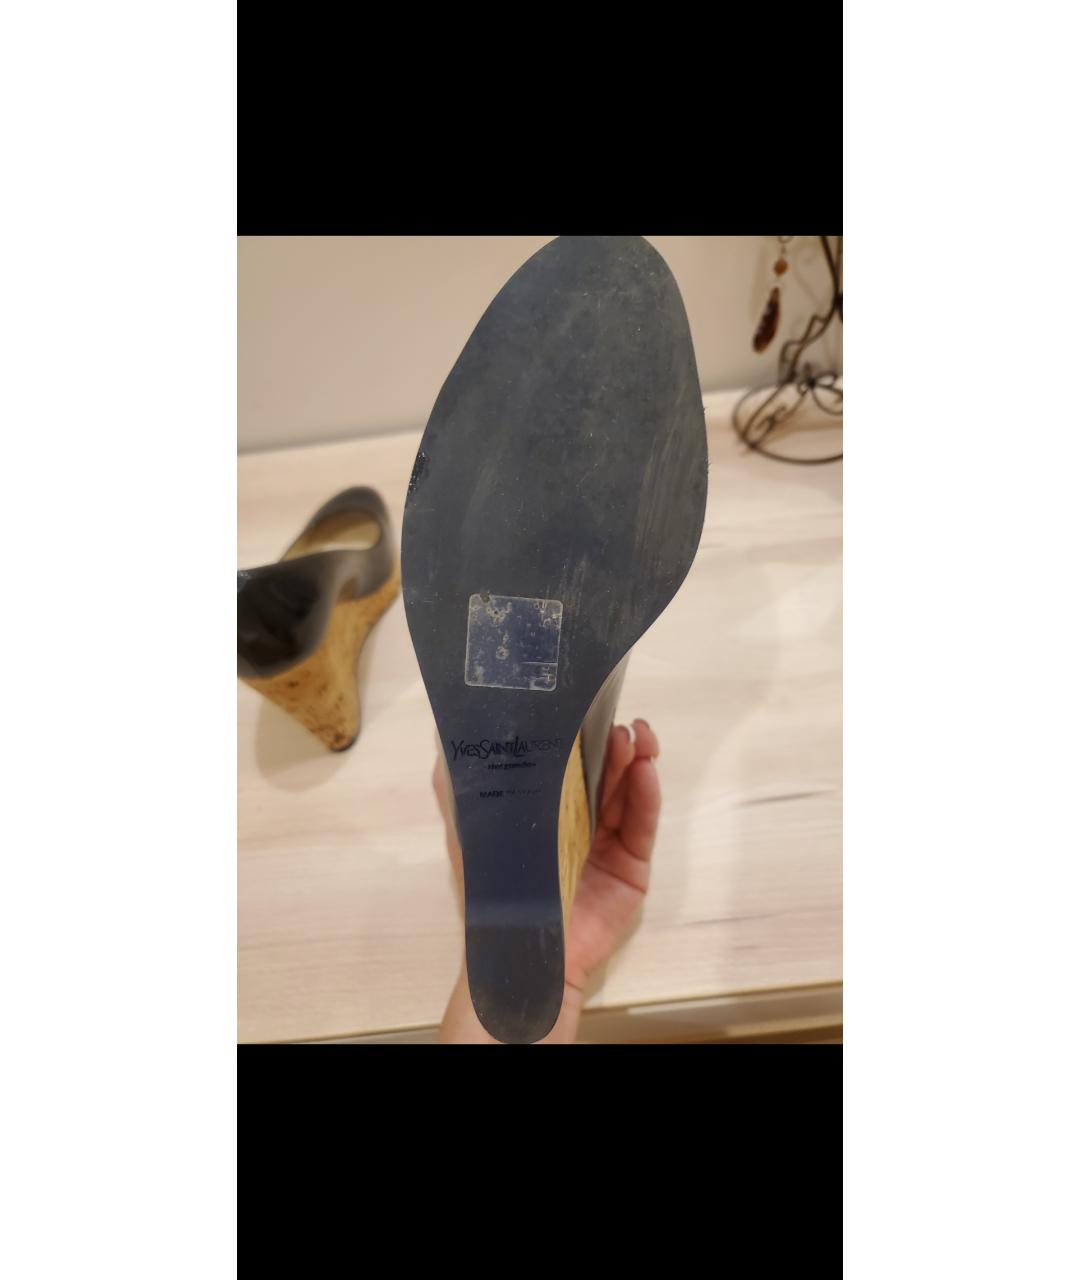 SAINT LAURENT Темно-синие туфли из лакированной кожи, фото 4